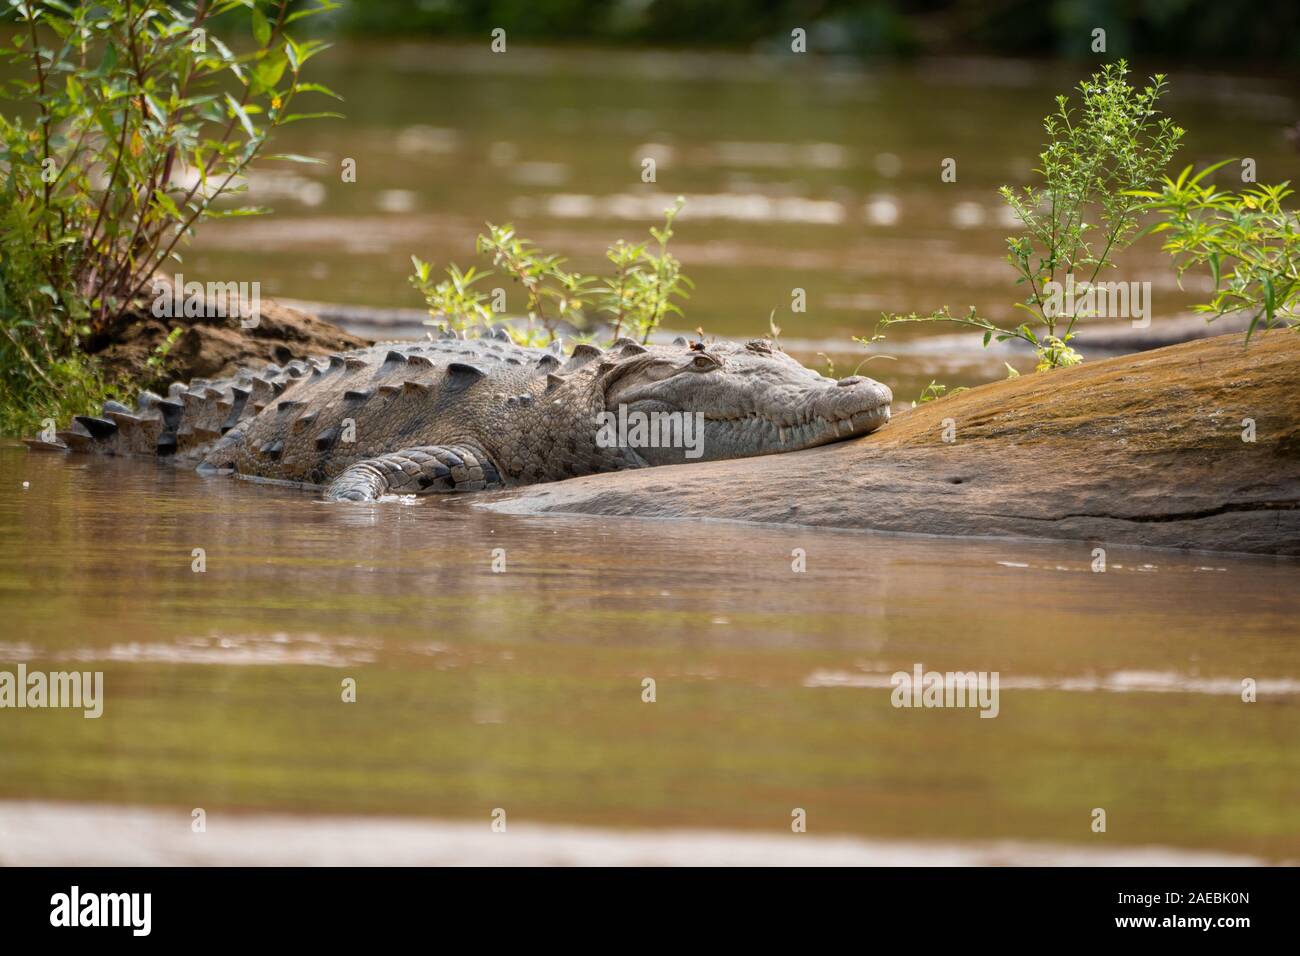 Caimano dagli occhiali (Caiman crocodilus). Immersi in acqua. Questo rettile vive in zone umide in America Centrale e America del Sud. Esso è esclusivamente carnivori, Foto Stock